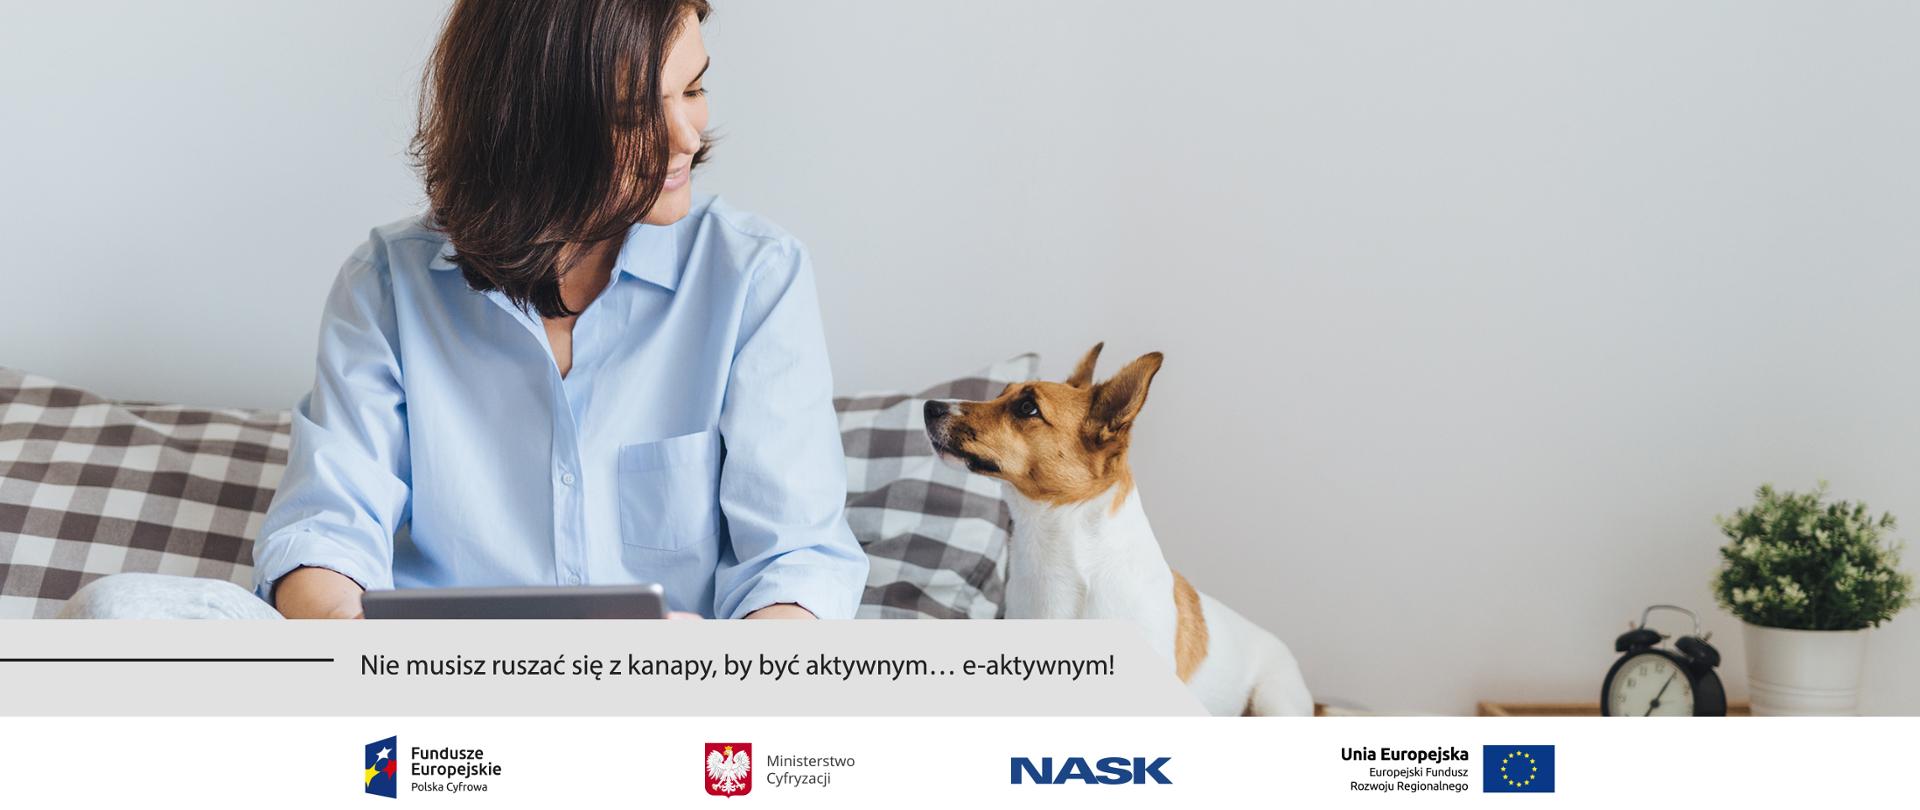 Kobieta siedząca po turecku na łóżku z tabletem w rękach. Patrzy na siedzącego obok, wpatrzonego w nią psa rasy Jack Russel terrier.